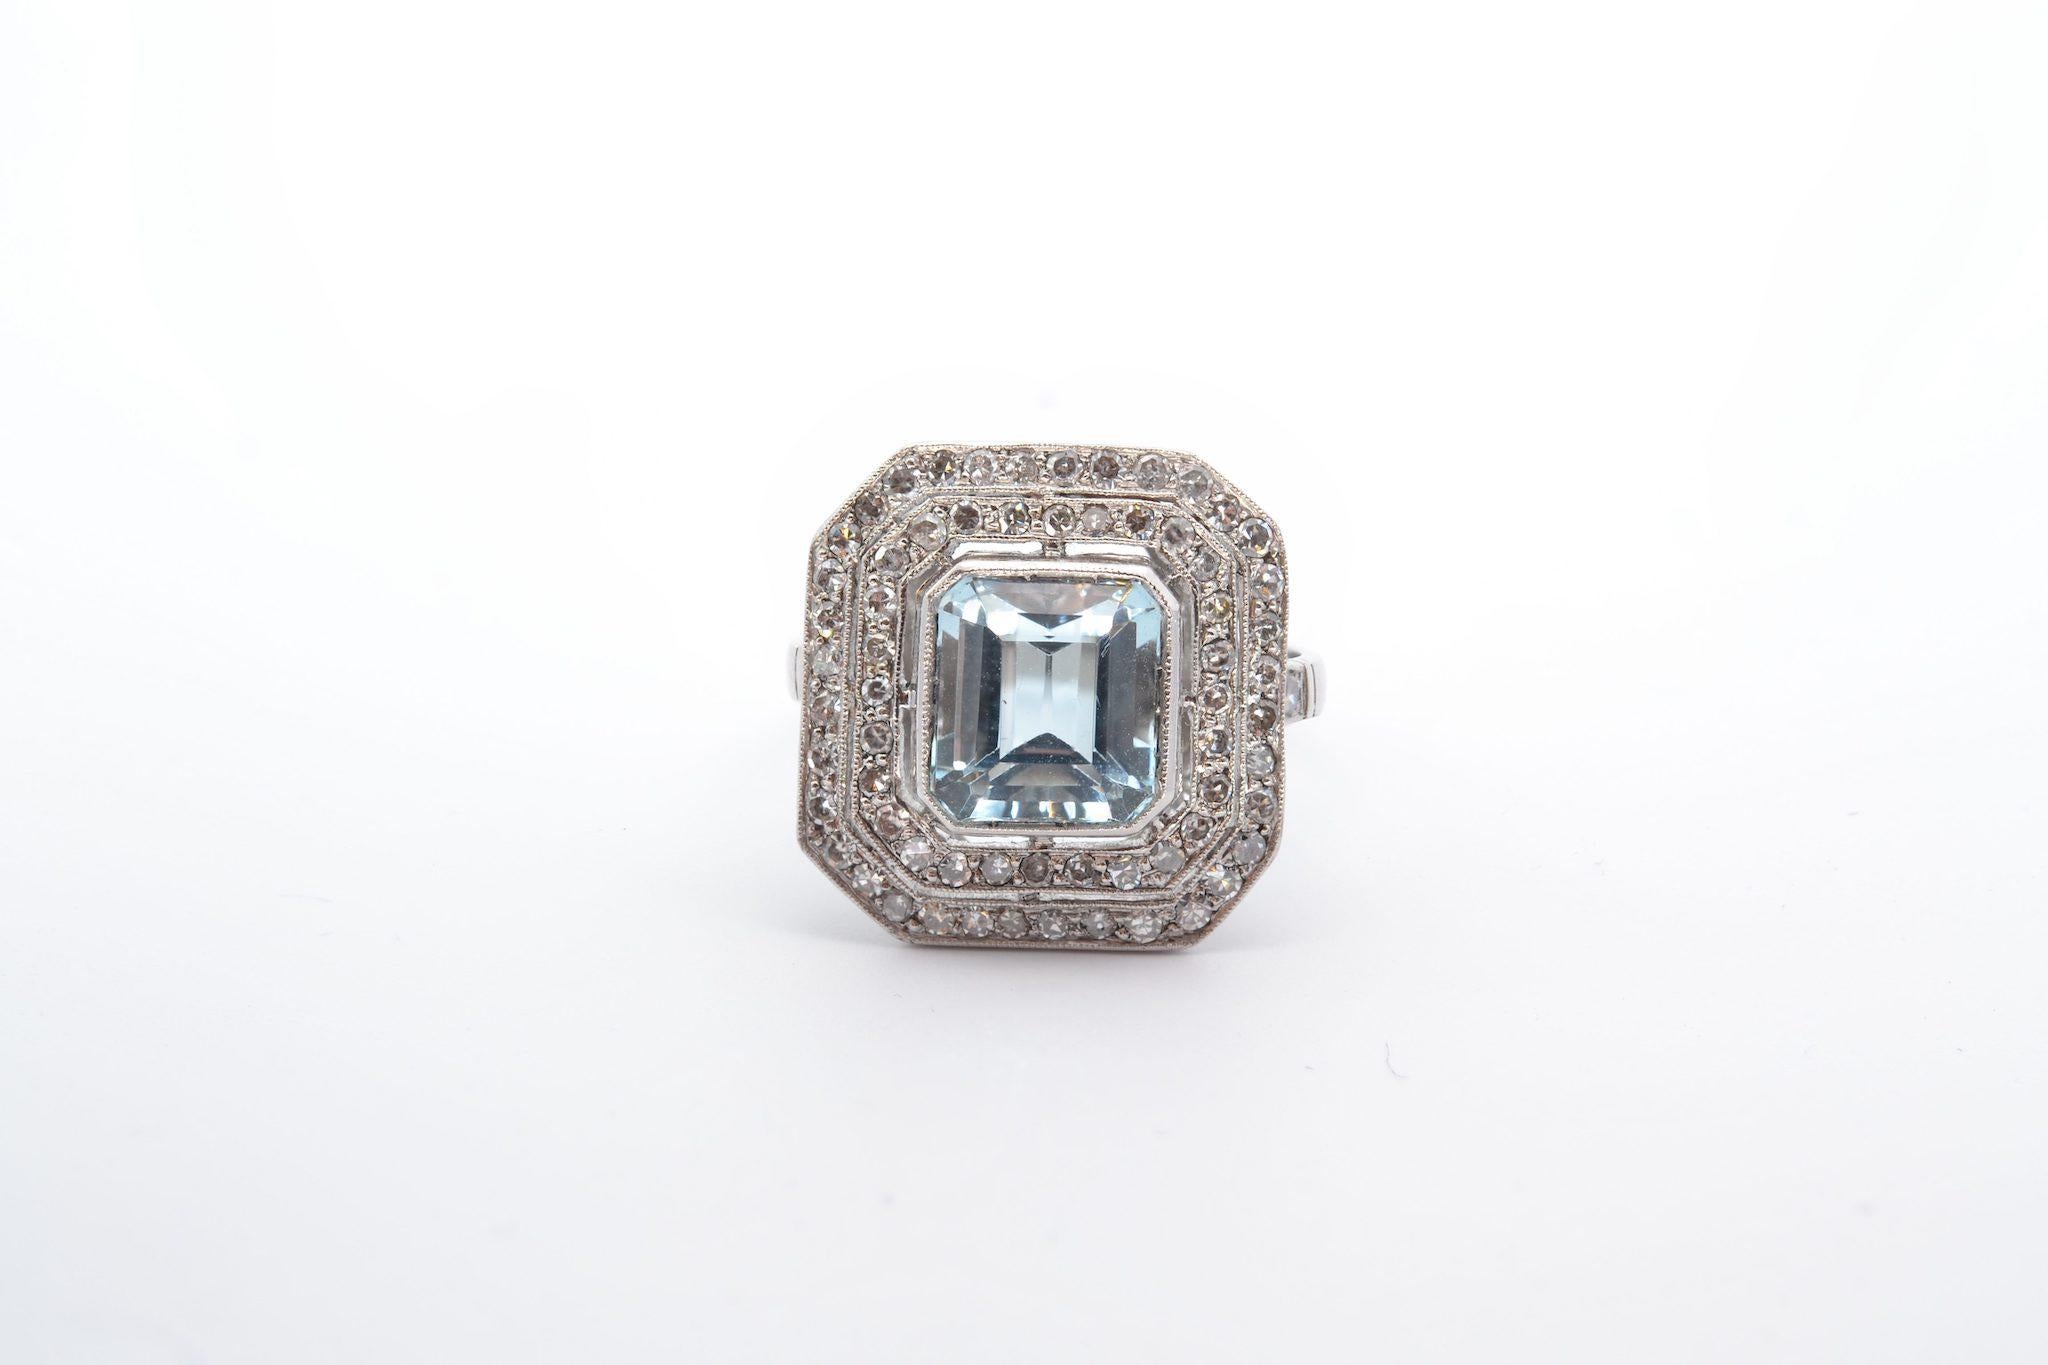 Pierres : Aigue-marine de 3,5cts, 64 diamants : 0,96 ct
Matériau : Platine
Dimensions : 18mm x 18mm
Poids : 7.2g
Période : 1950
Taille : 59 (taille libre)
Certificat
Réf. : 25078